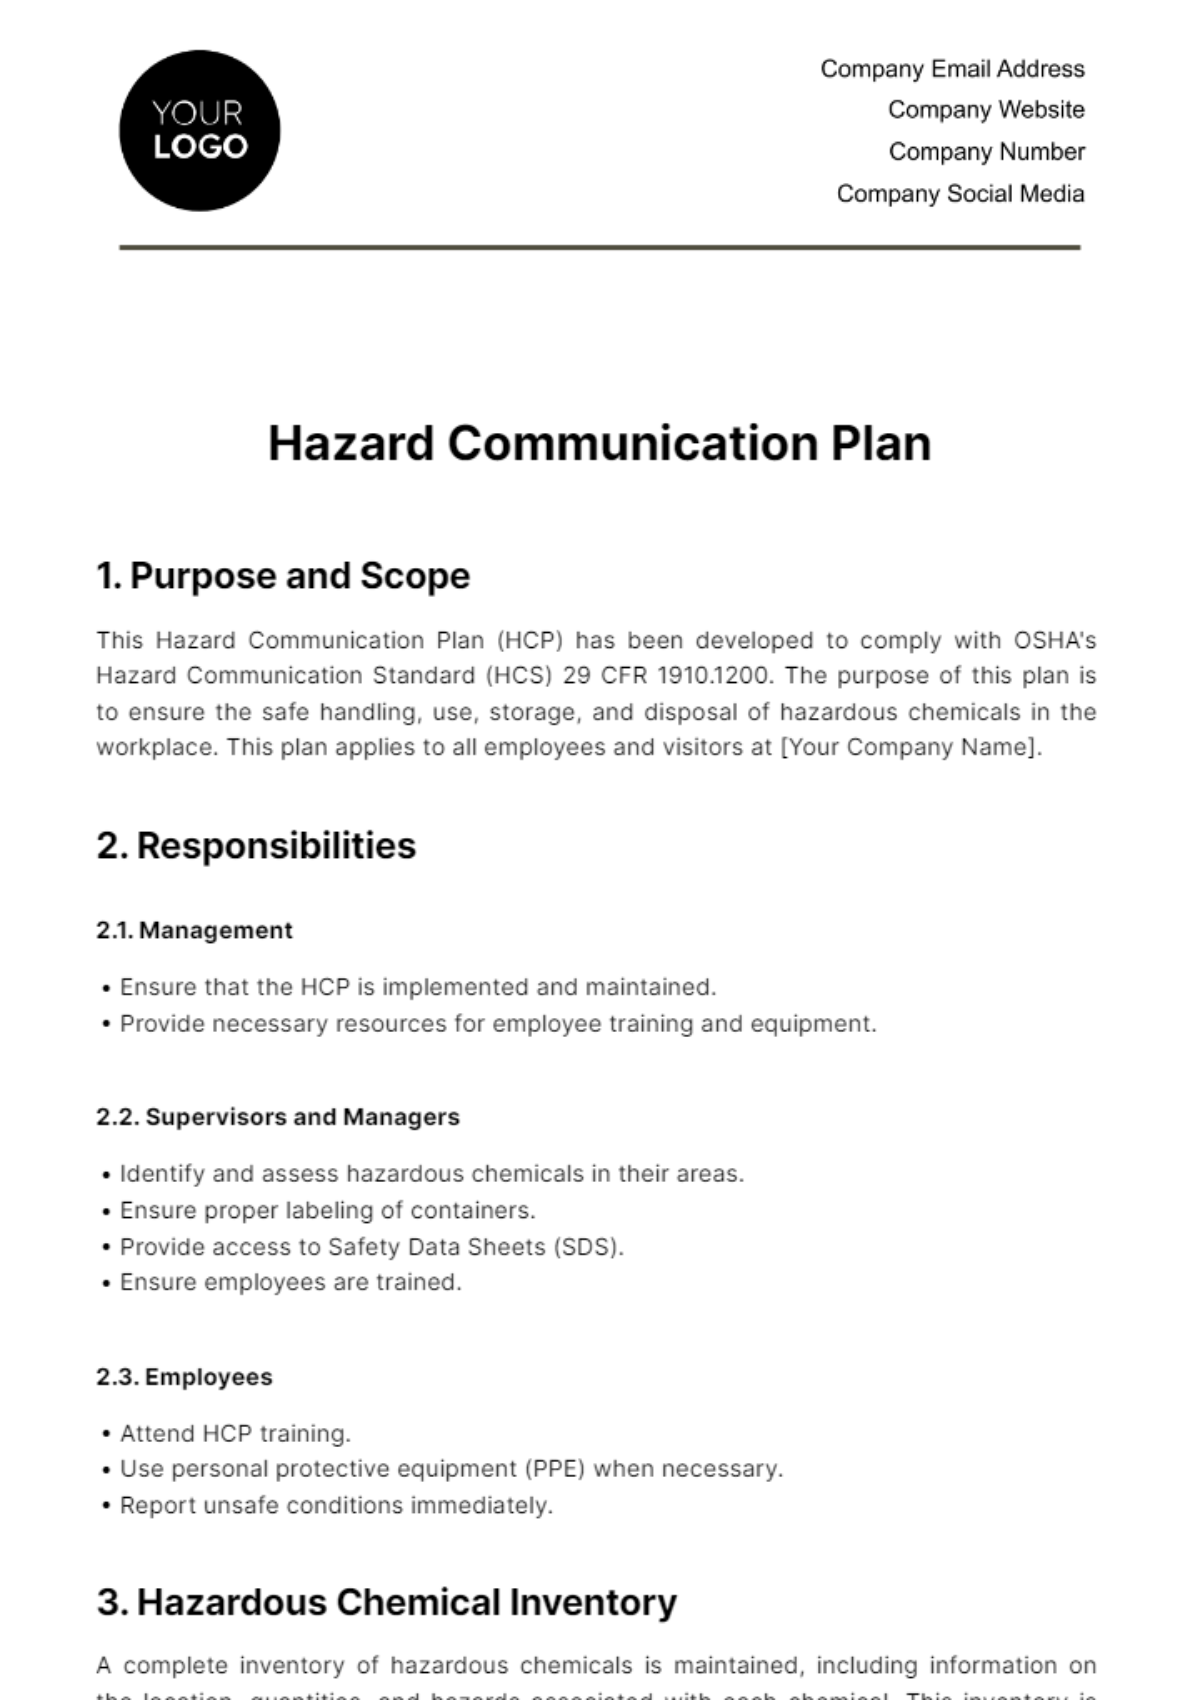 Hazard Communication Plan HR Template